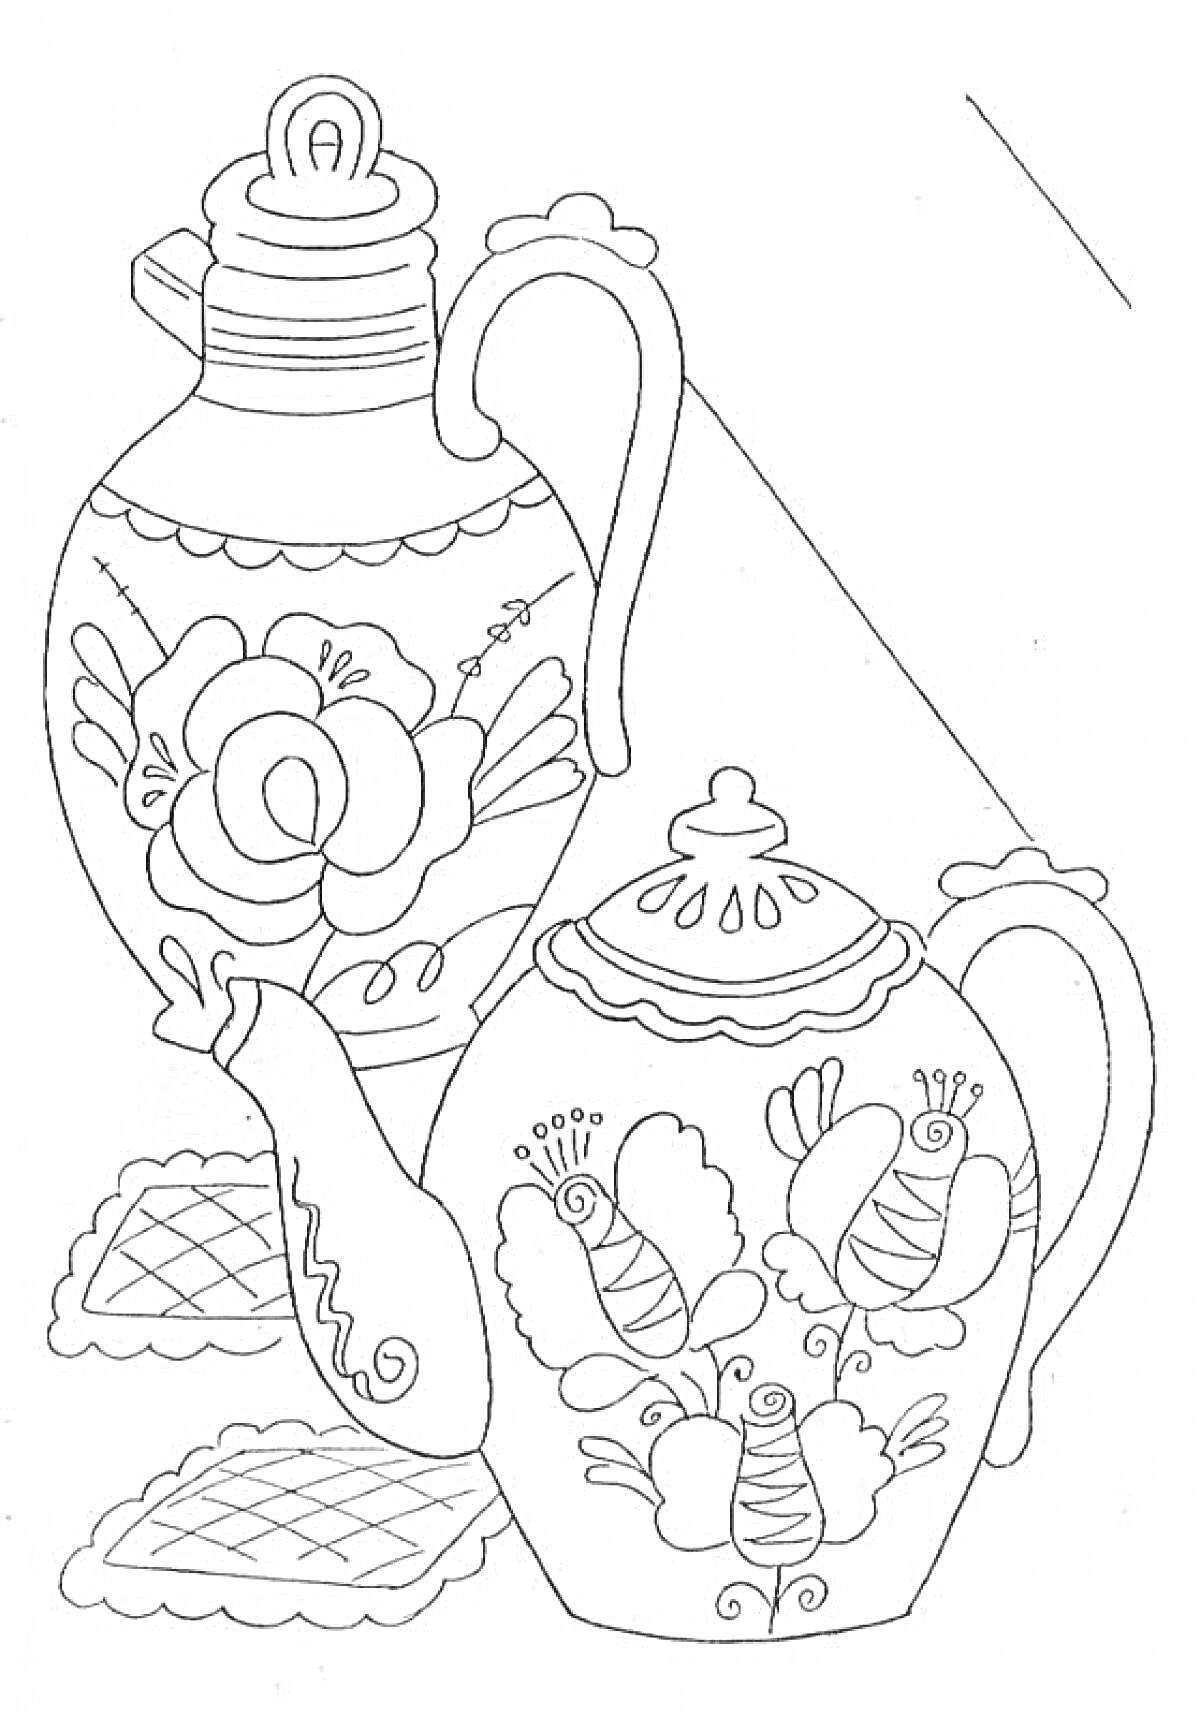 Чайник с росписью в виде цветов и бабочек, кувшин с росписью в виде цветов, две салфетки